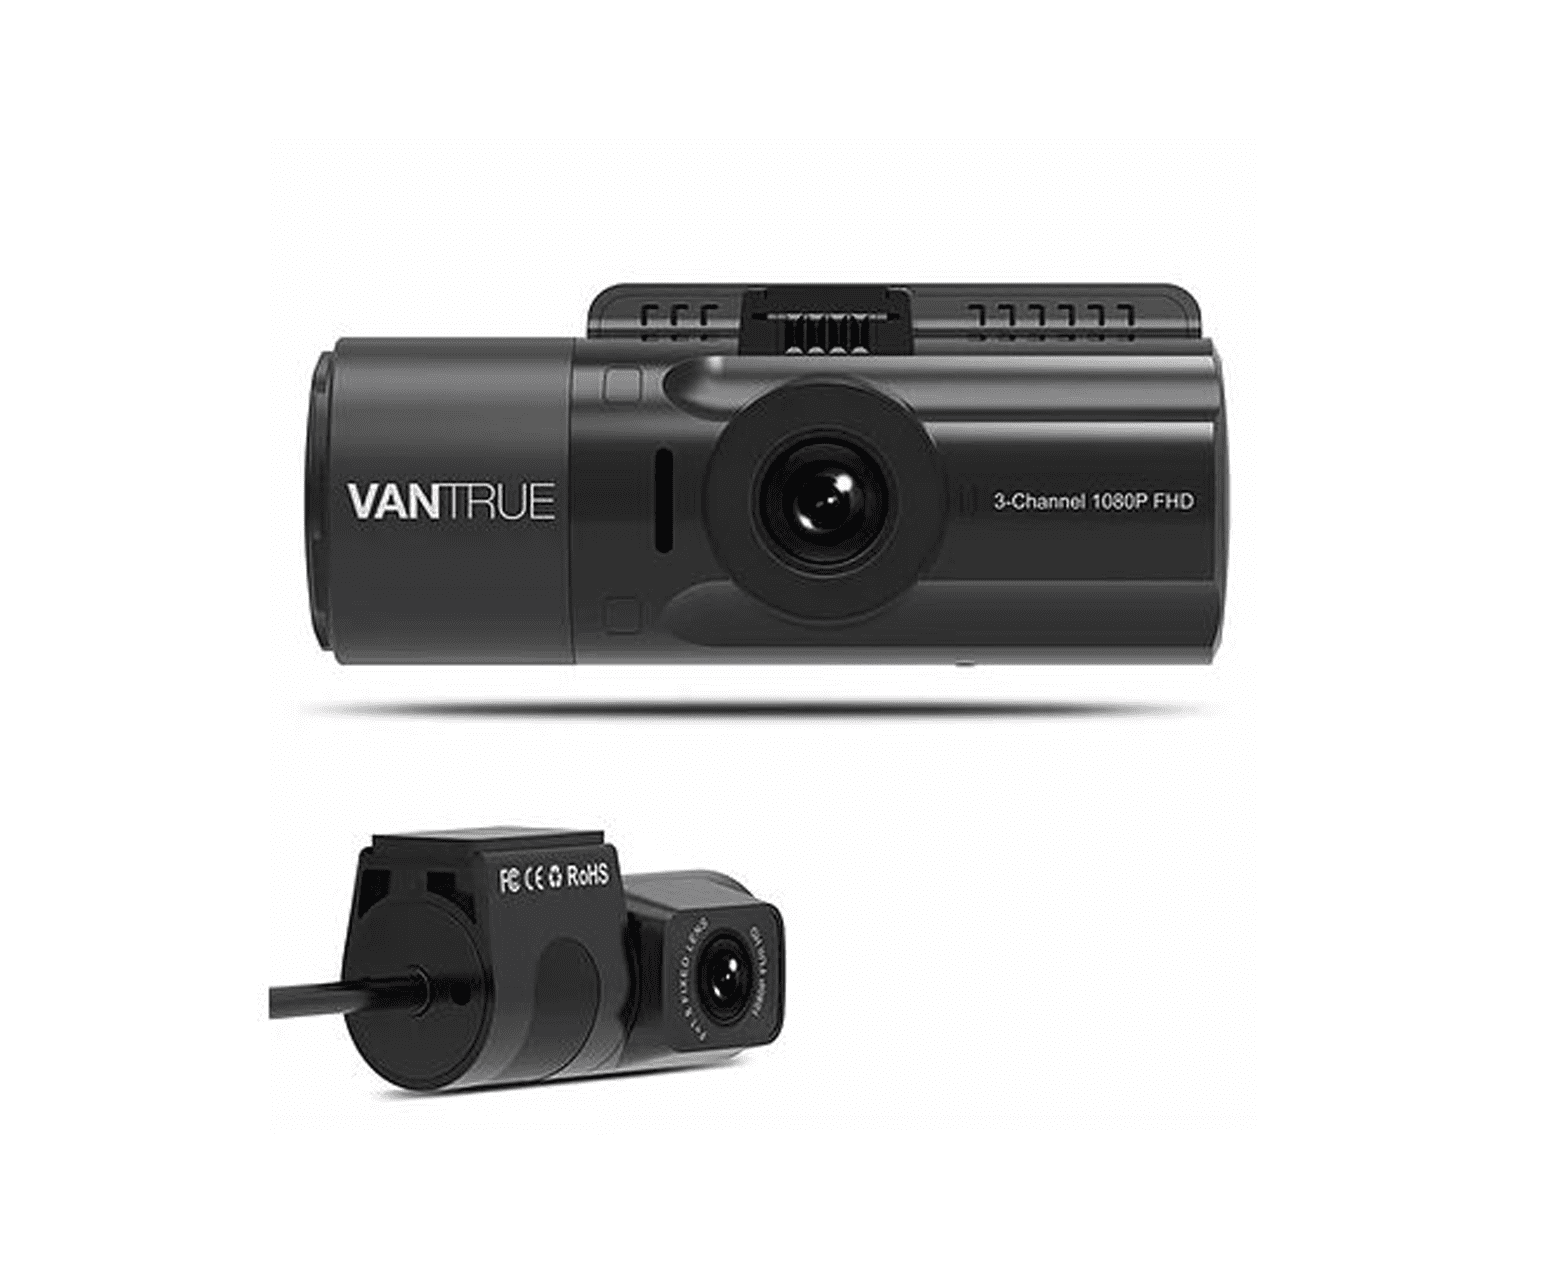 Vantrue N4 3 Channel 1440p Dashcam